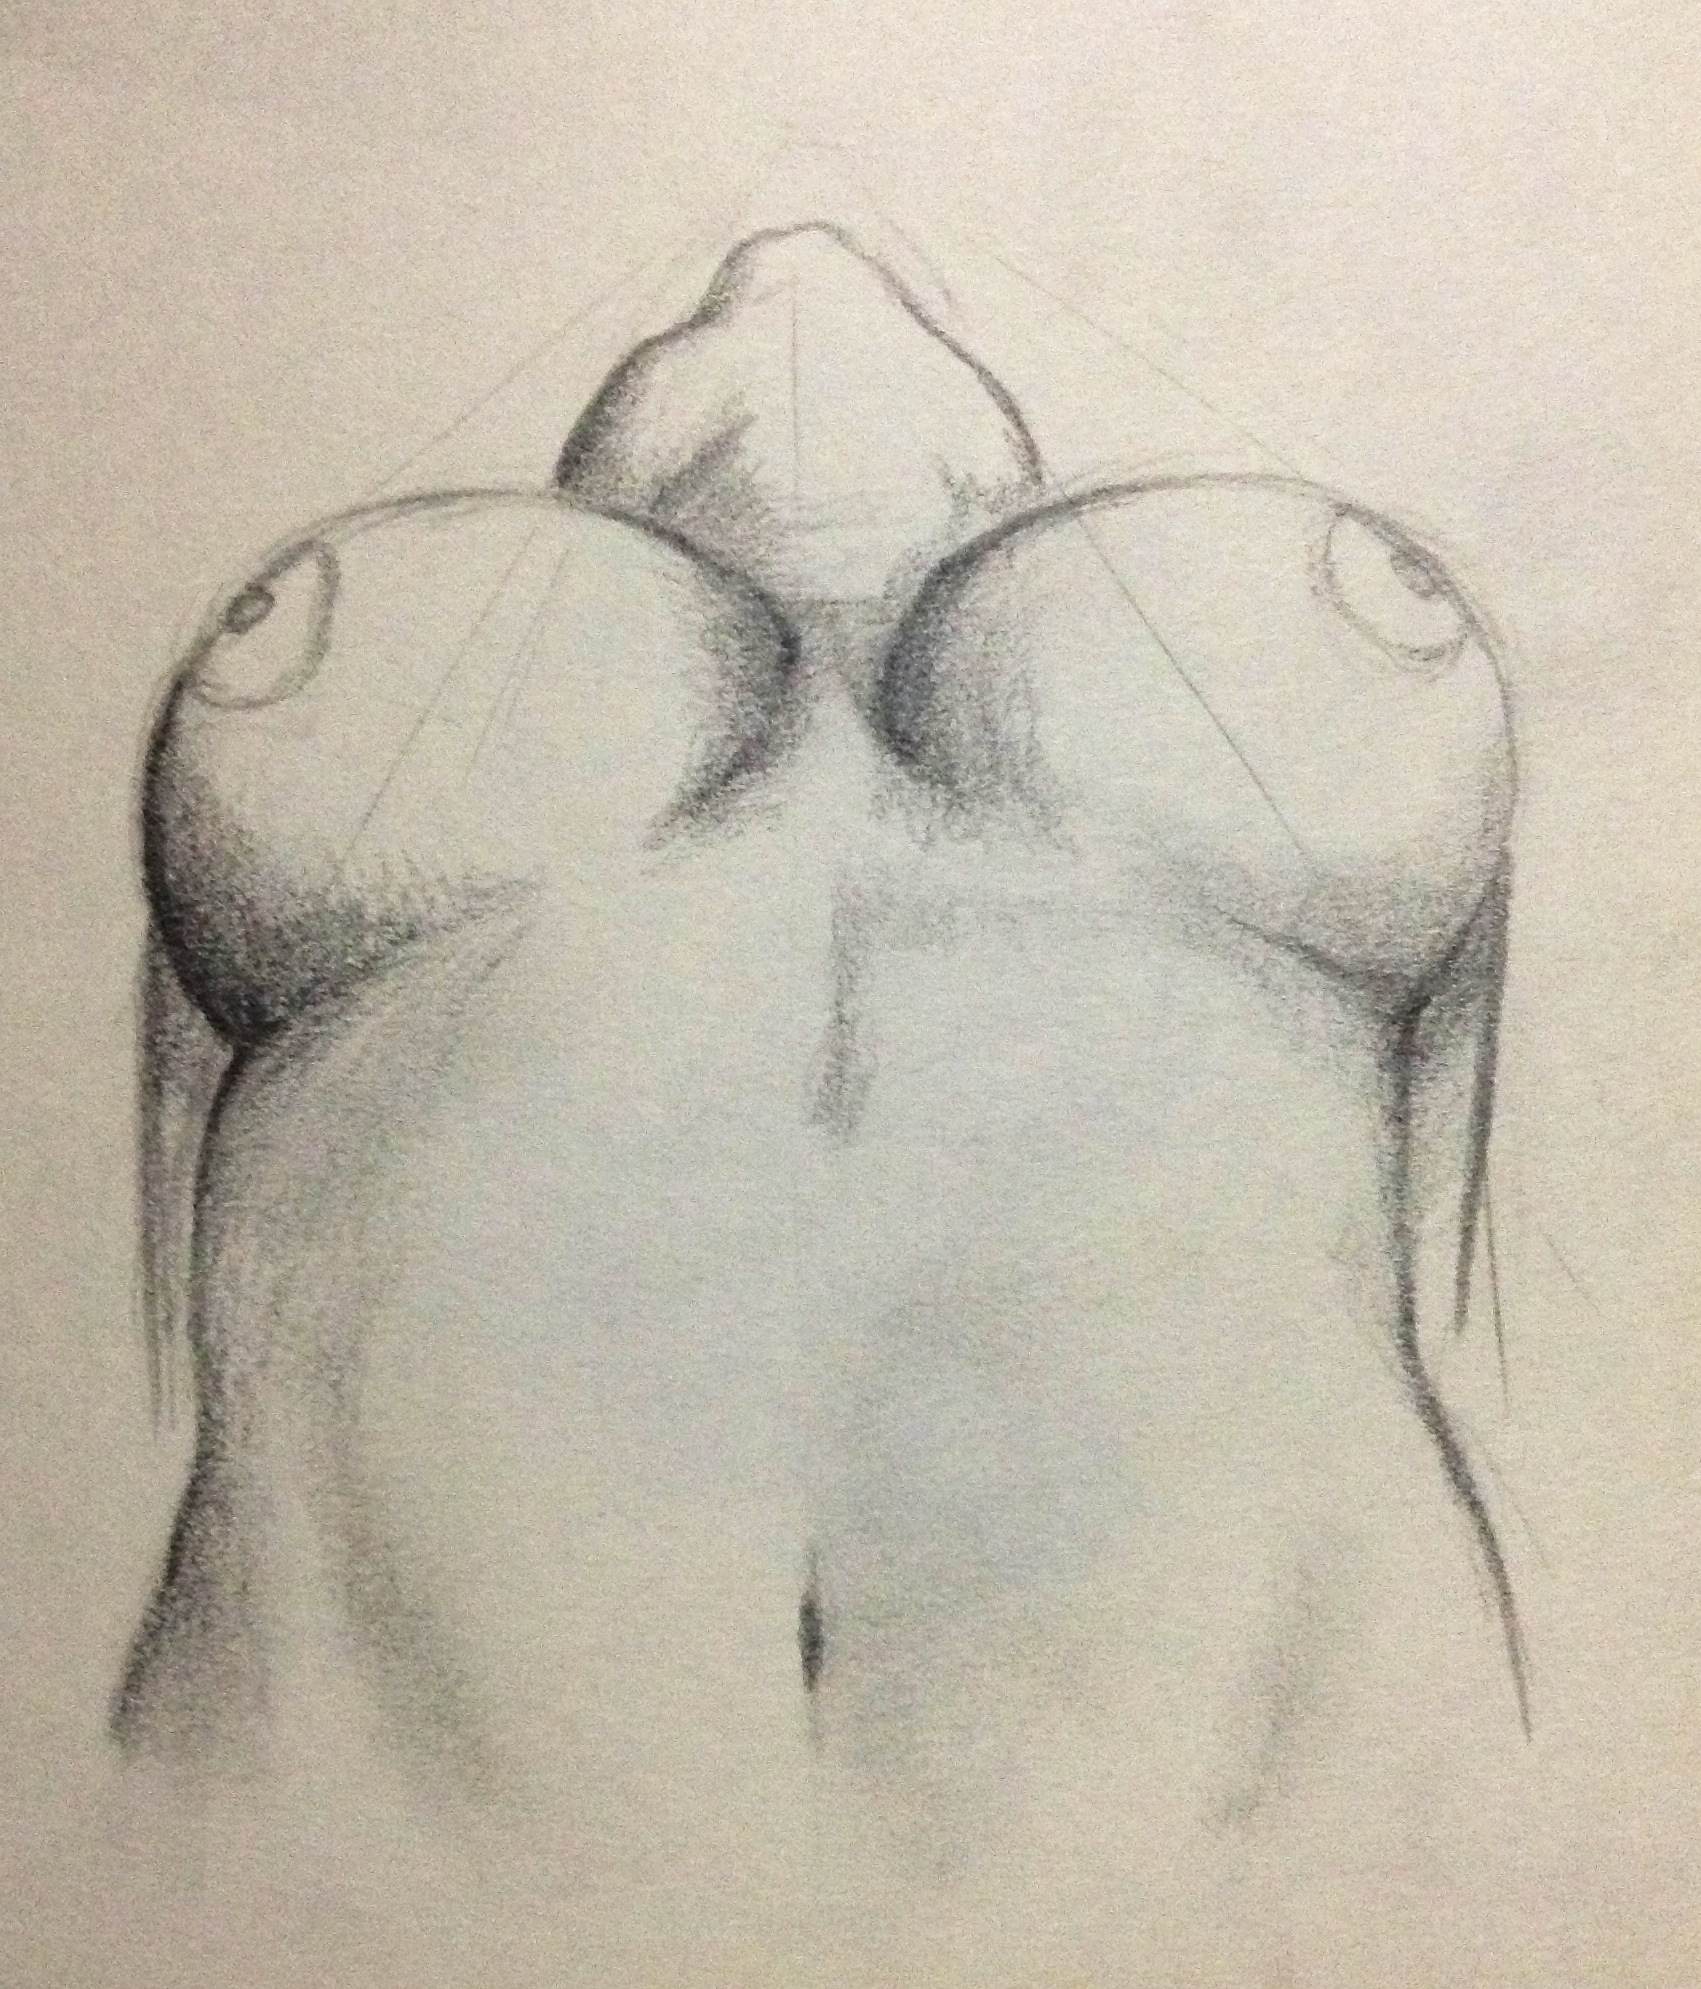 Pregnant Sex Porn Pencil Sketch - Pencil sketches nude women.